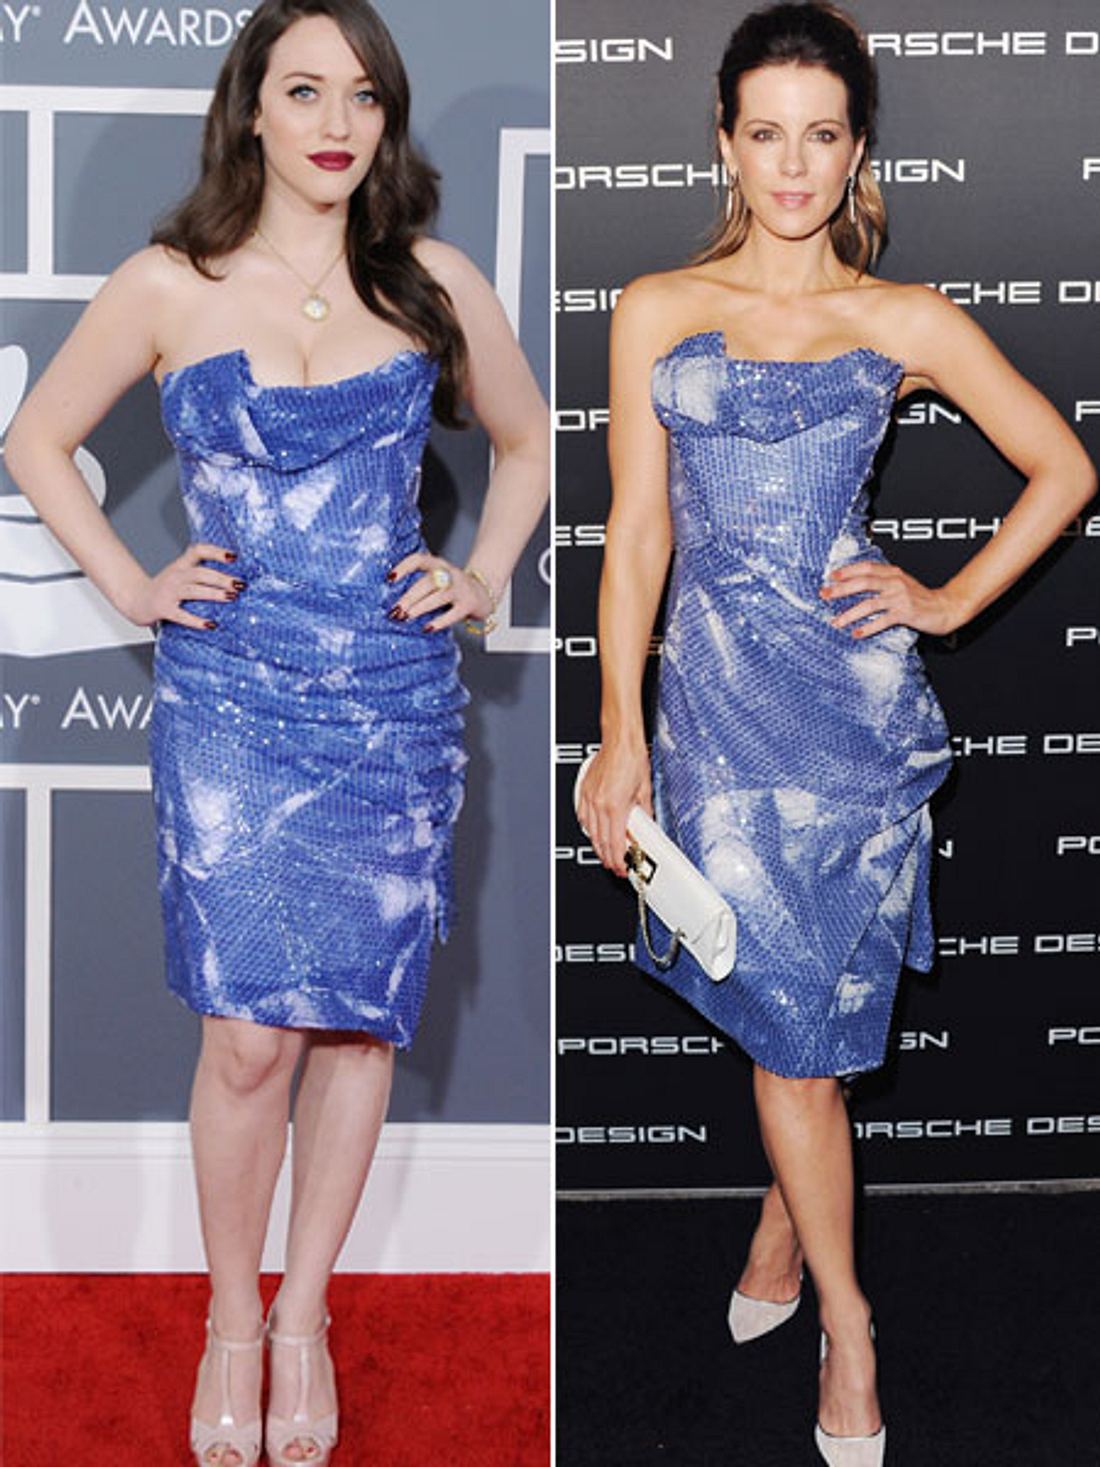 Zwei Stars, ein Kleid: Kat Dennings vs. Kate Becksinsale